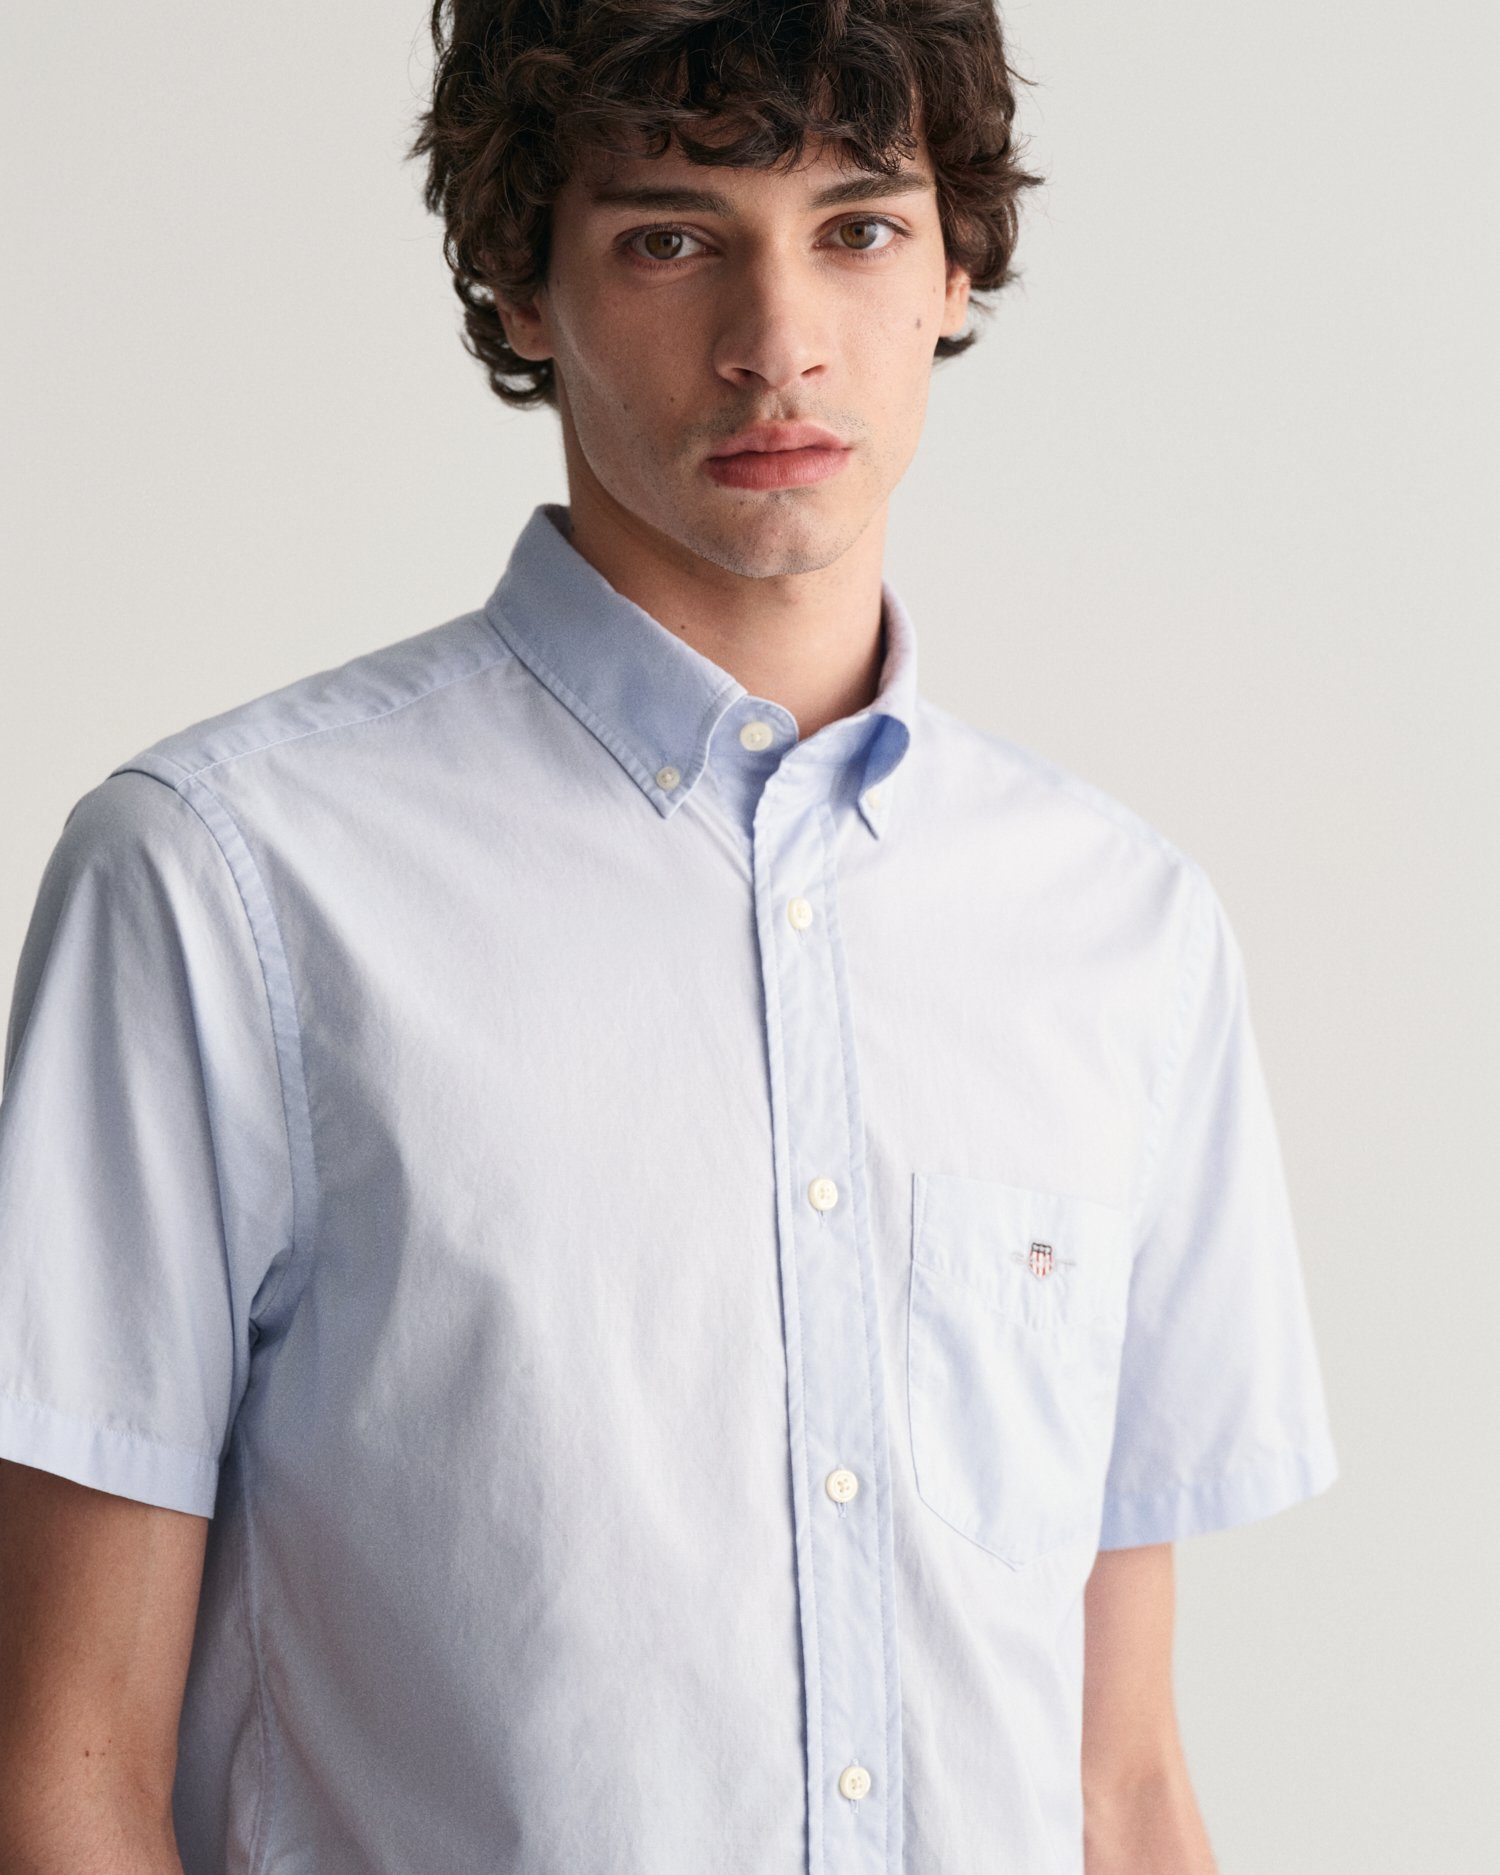 Gant Overhemd met korte mouwen Regular fit poplin overhemd licht slijtvast easy care